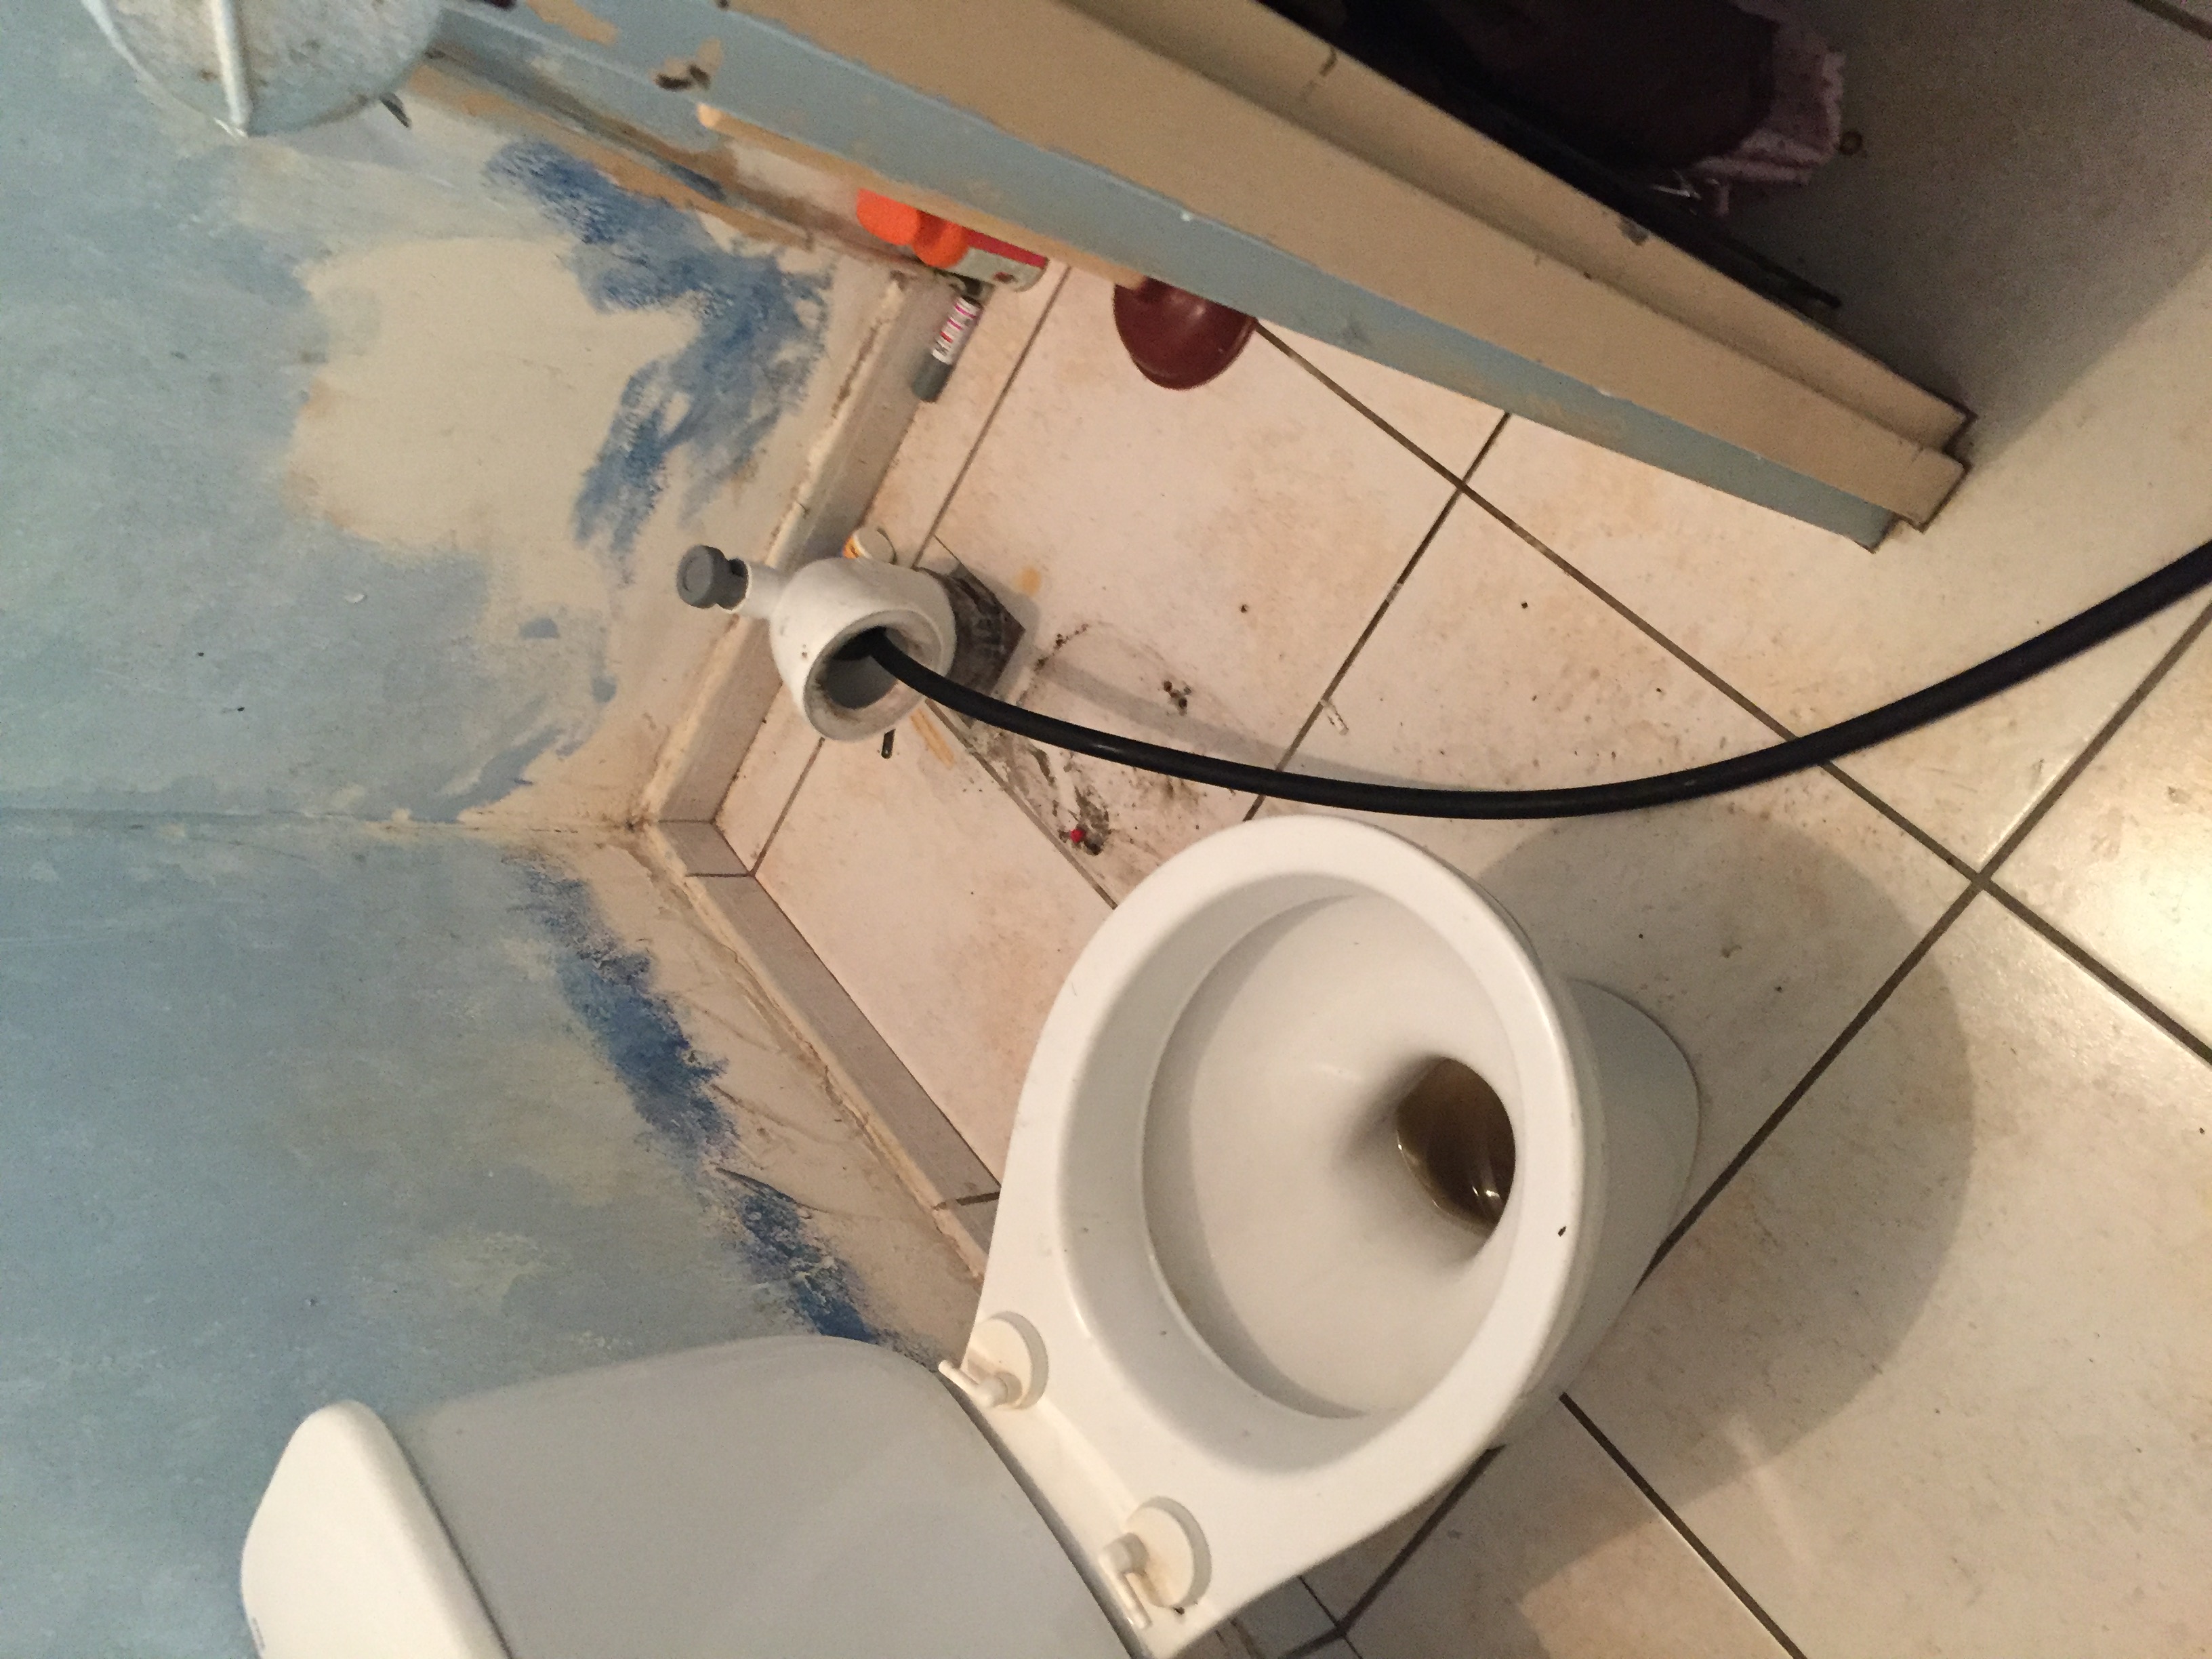 Comment déboucher les toilettes rapidement avec pas un rond ?